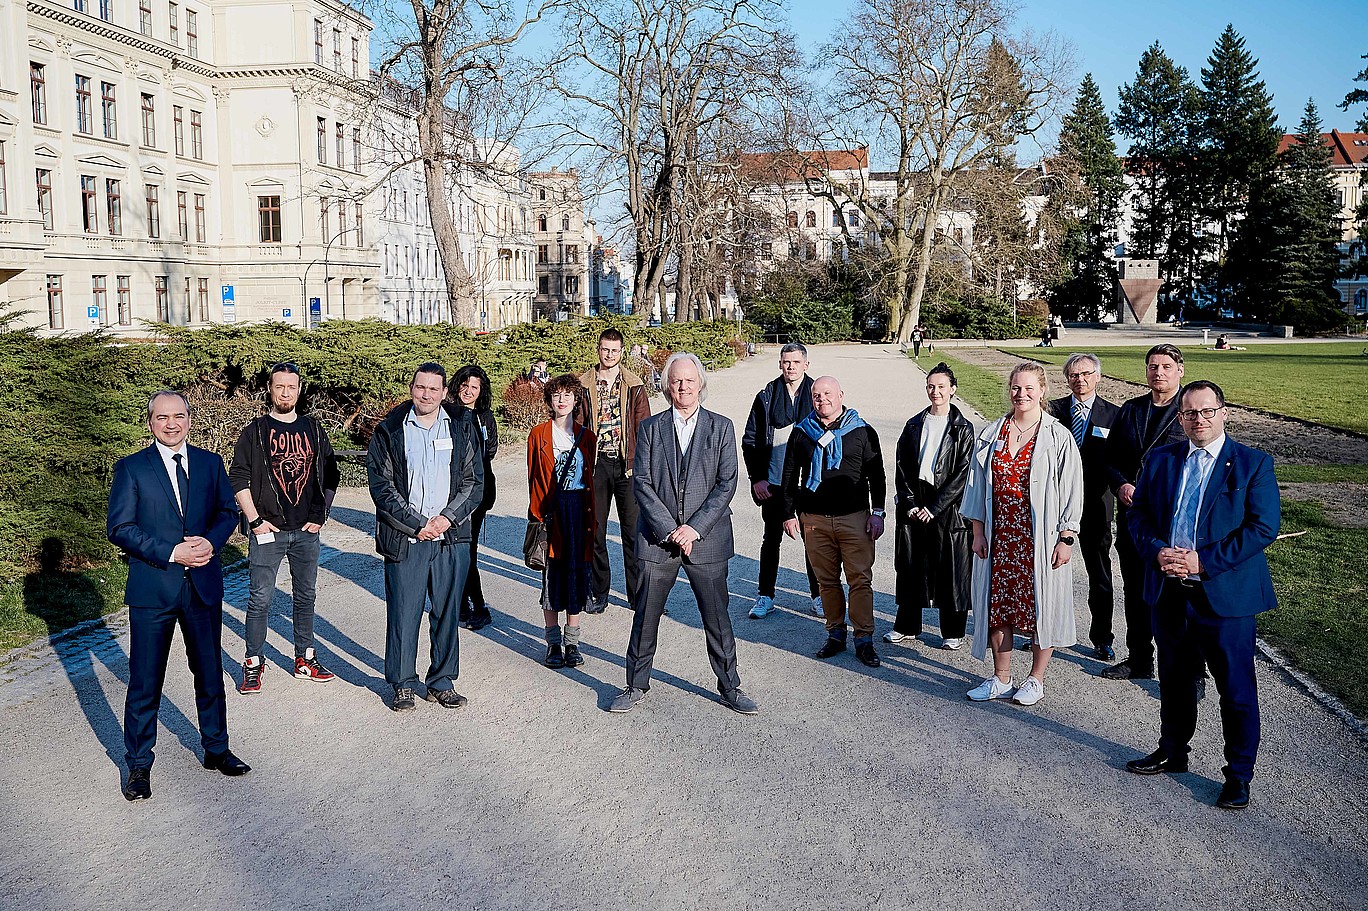 Gruppenfoto der geladenen Gäste und Teilnehmenden der Sächsischen Filmakademie